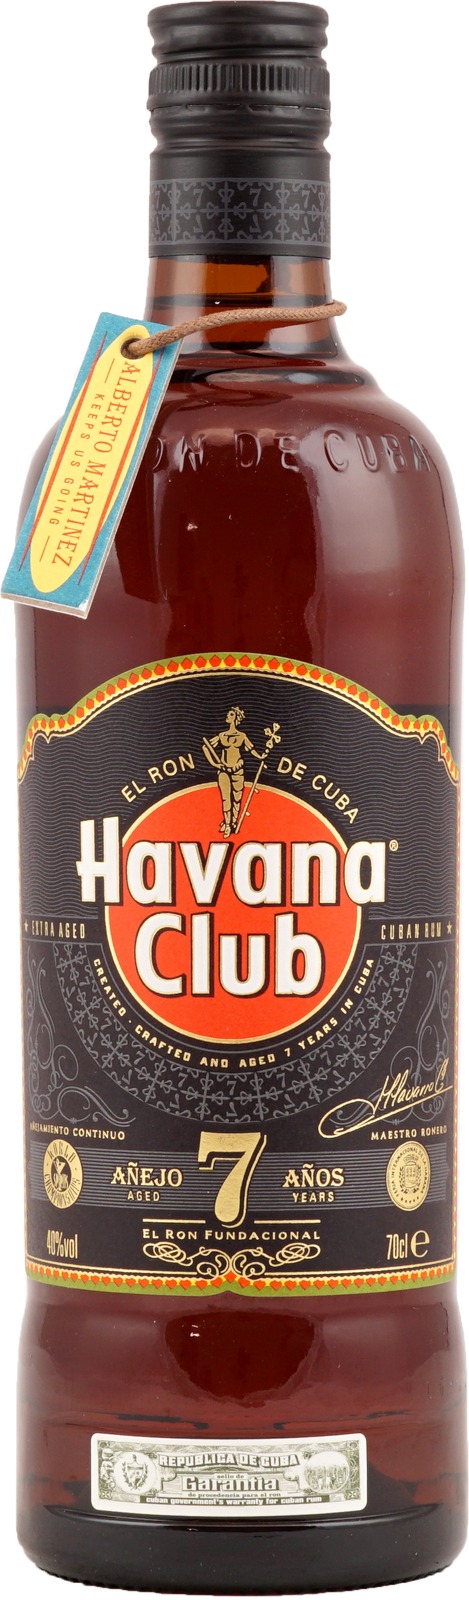 40% Jahre) Club Liter 0,7 (7 Havana kubanis Vol., Añejo